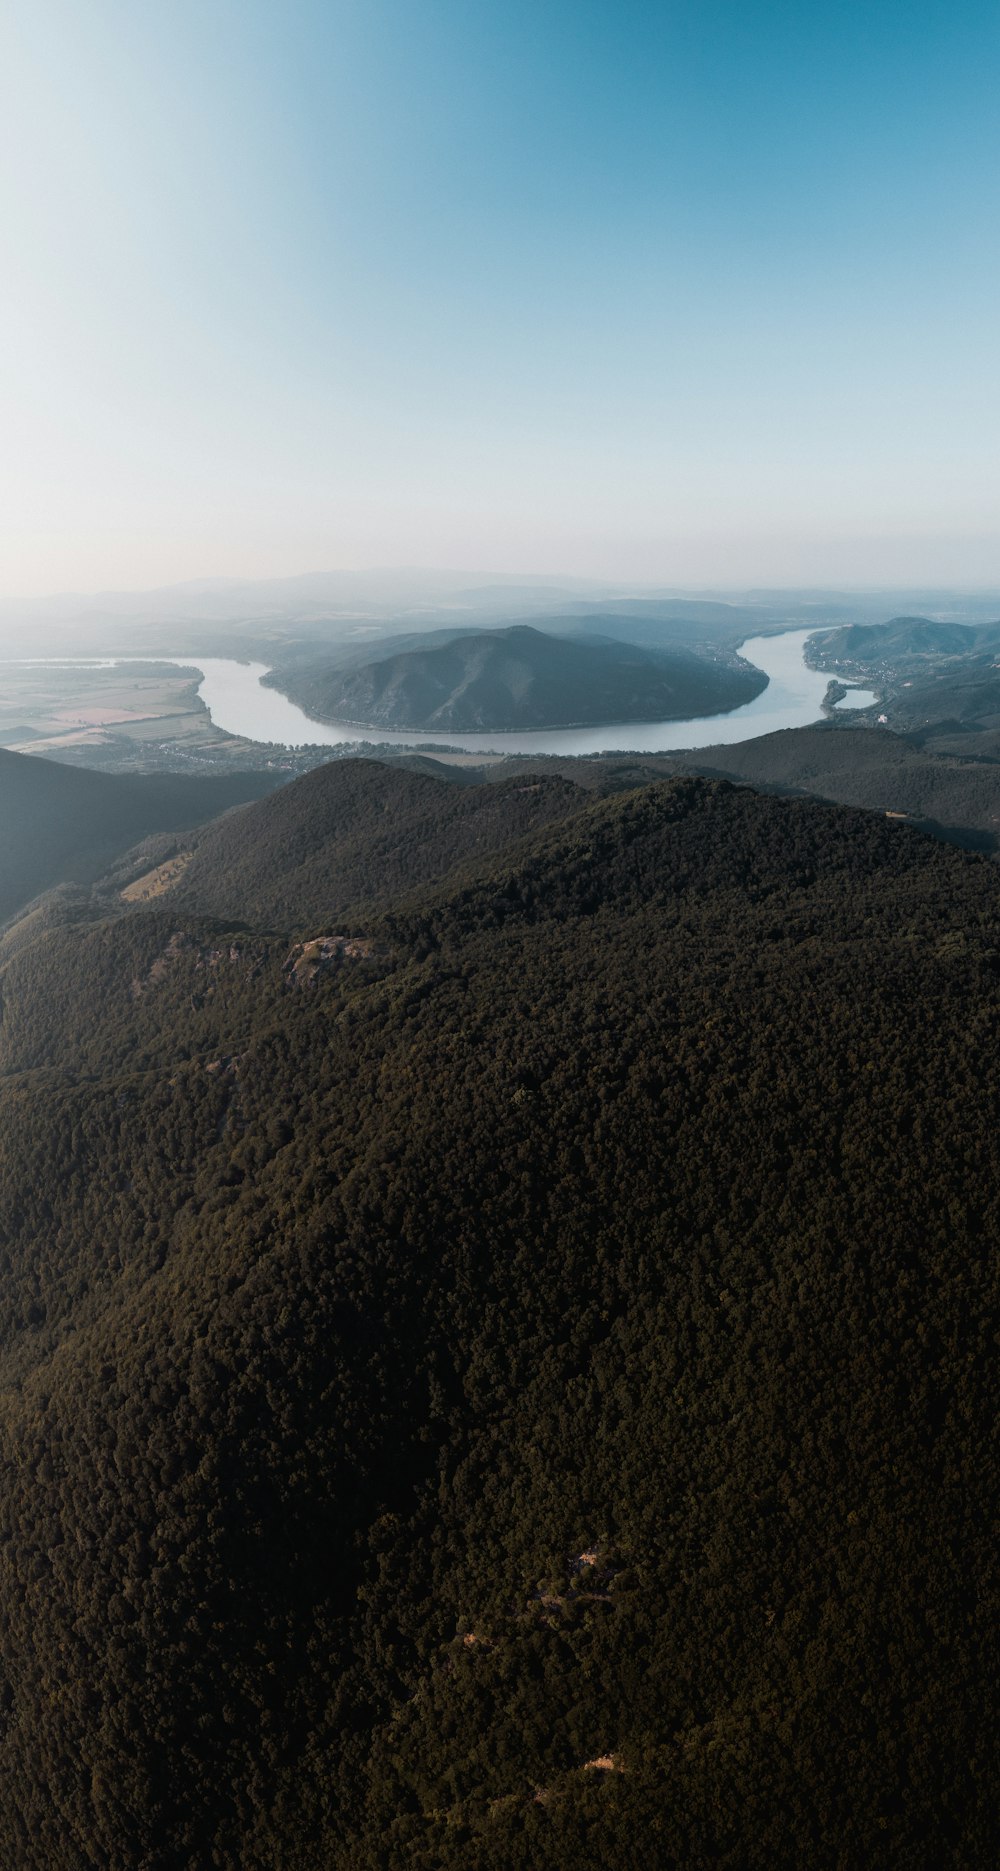 Collines verdoyantes et rivière en photographie aérienne